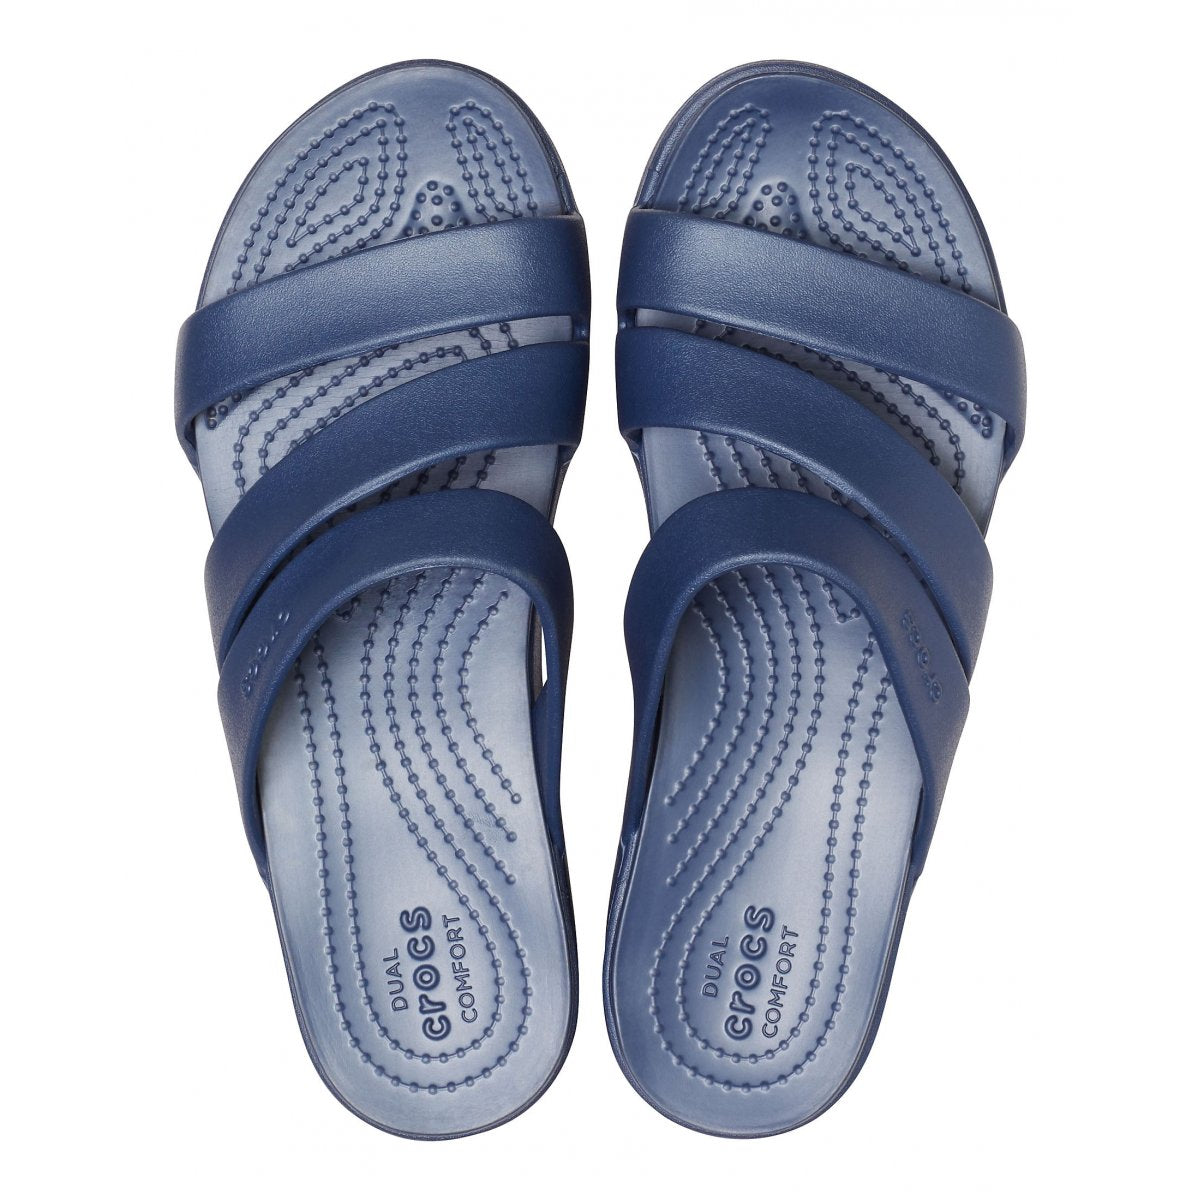 Crocs women&#39;s sandal with heel lift Monterey Wedge 206304-410 blue